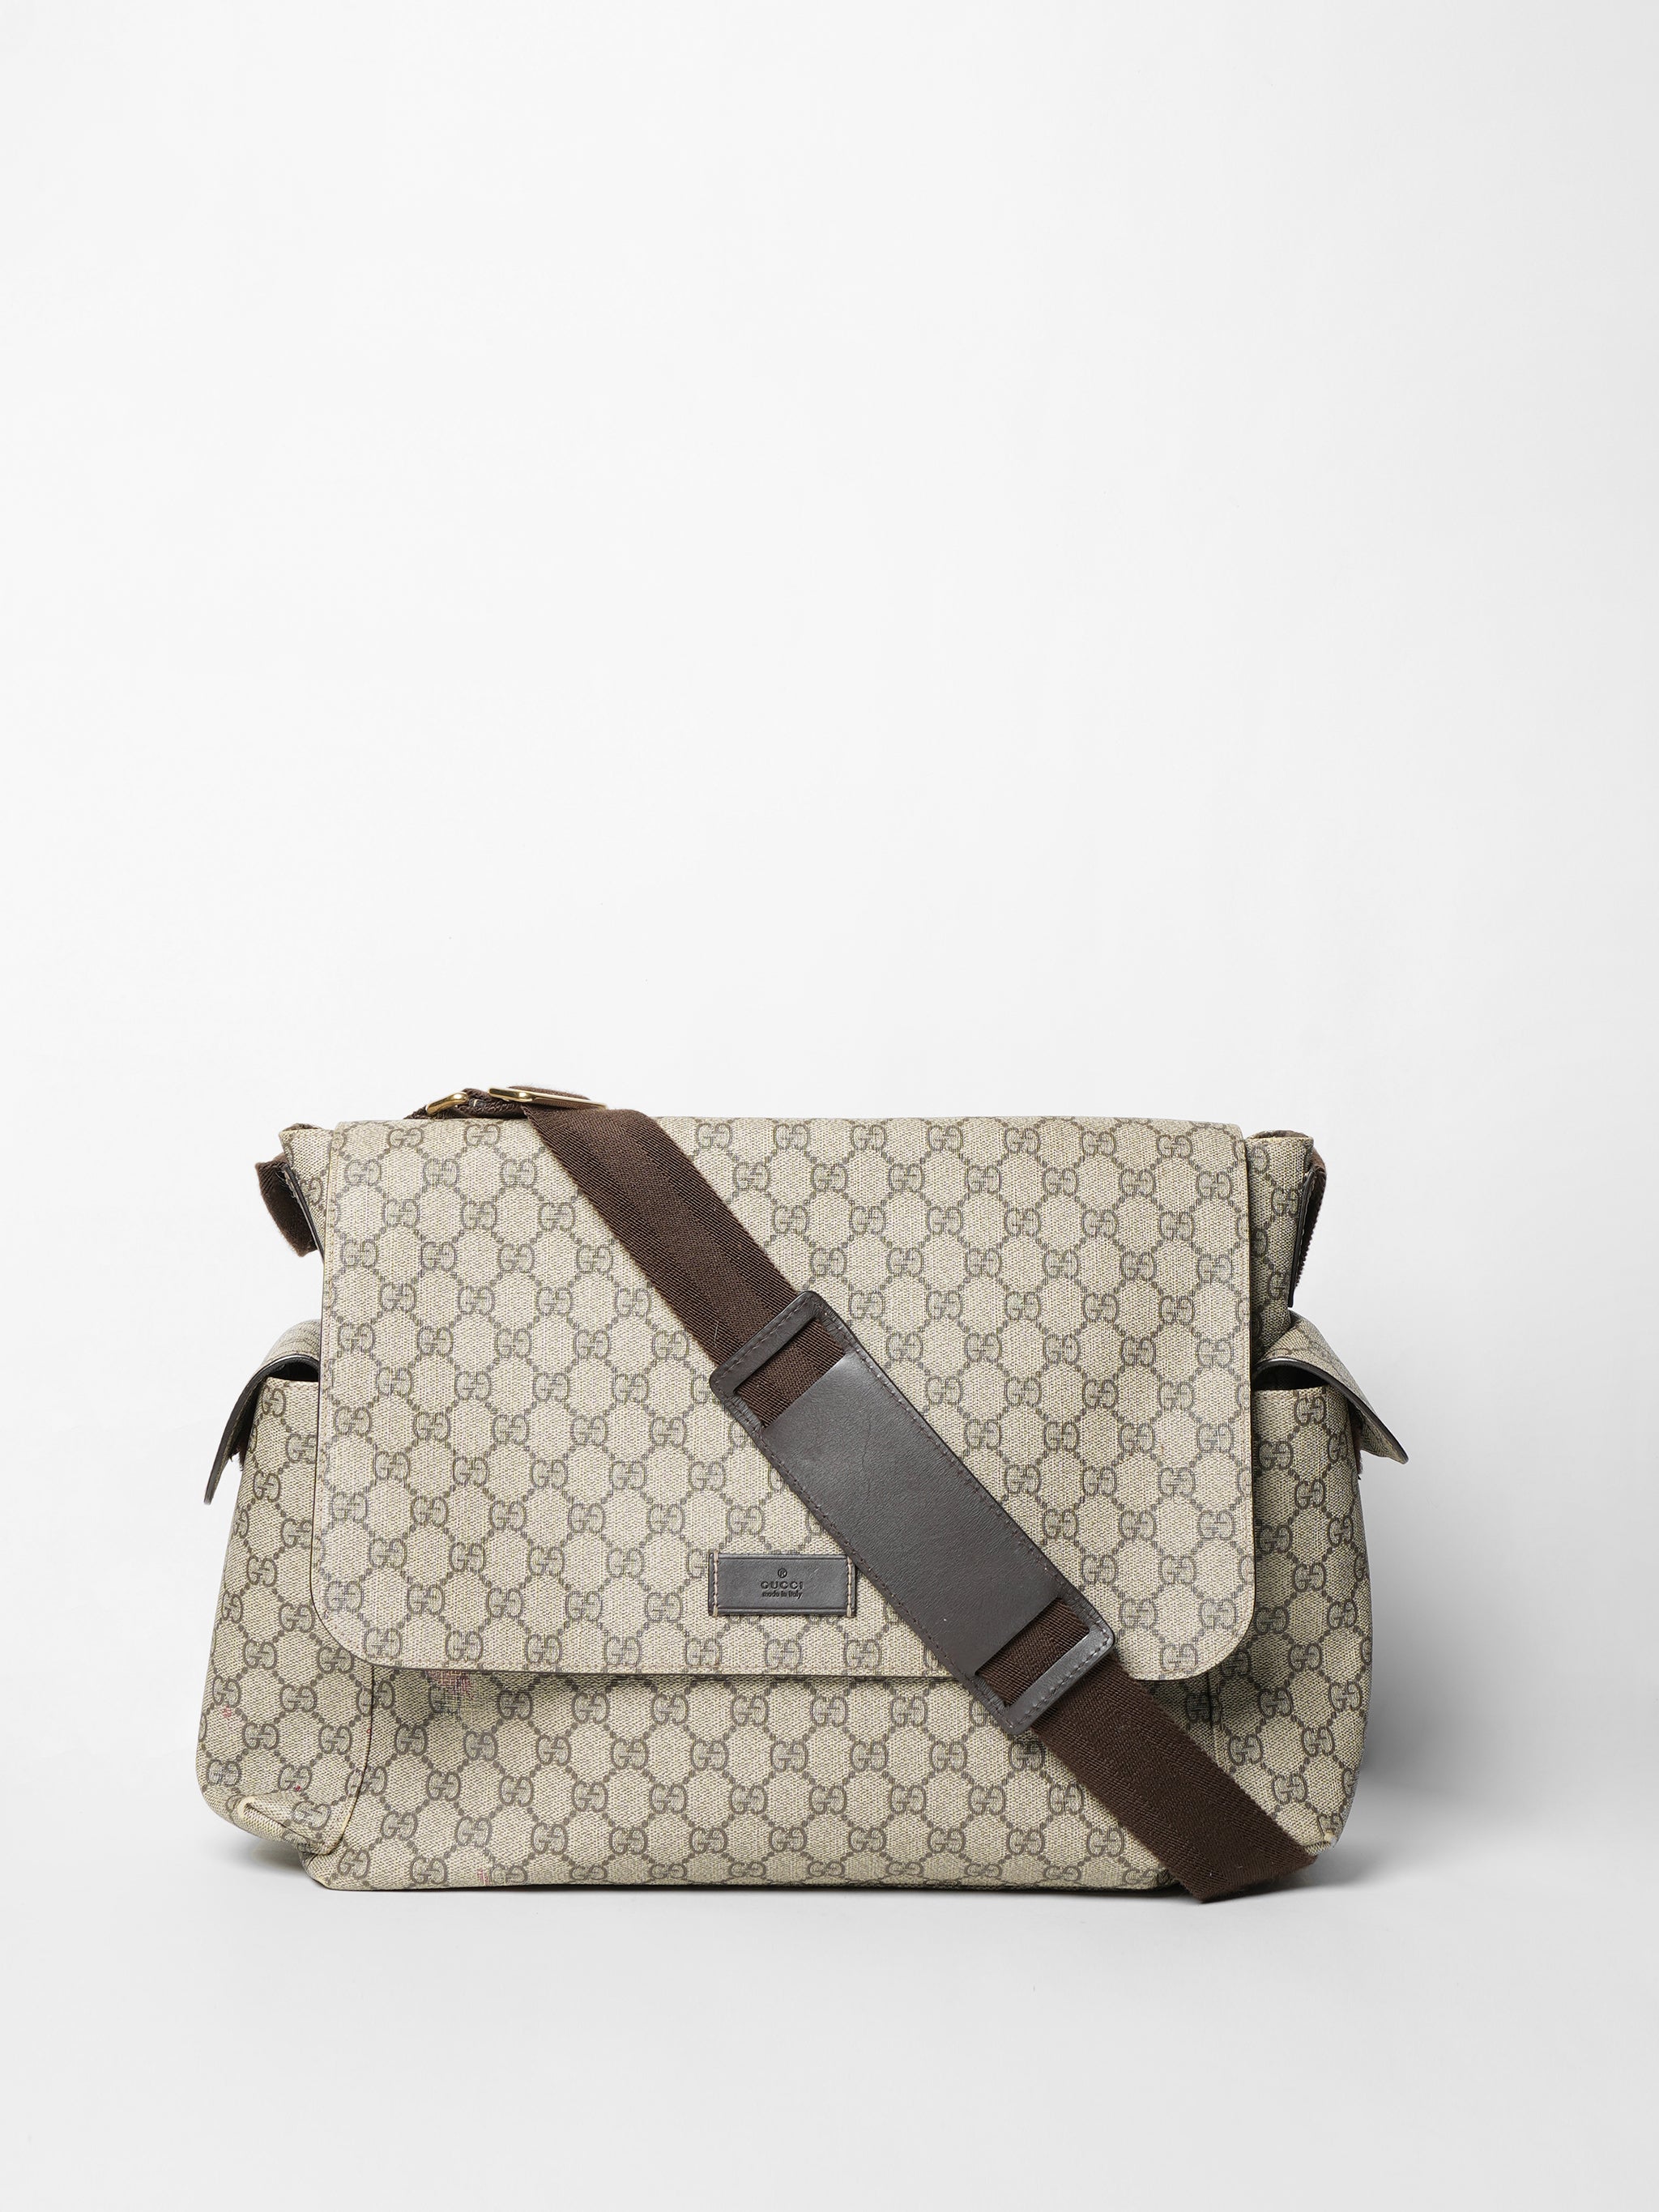 Gucci Beige GG Supreme Canvas Diaper Bag